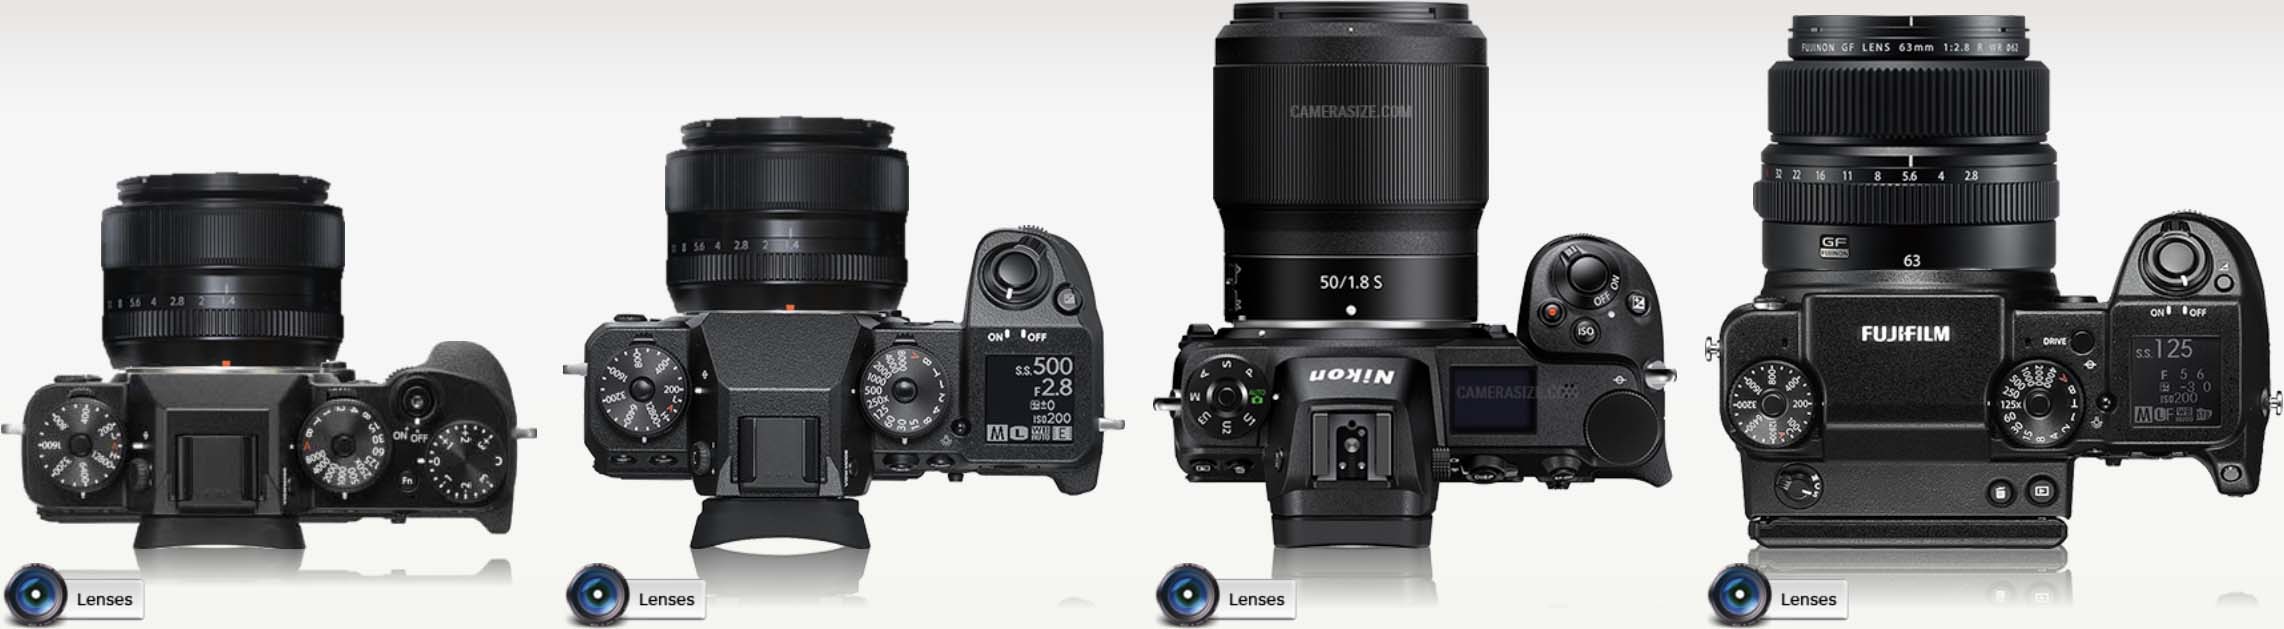 Camera Size Comparison Fujifilm X-T2 vs X-H1 Nikon vs Fujifilm GFX 50S vs Nikon Z7 - Fuji Addict